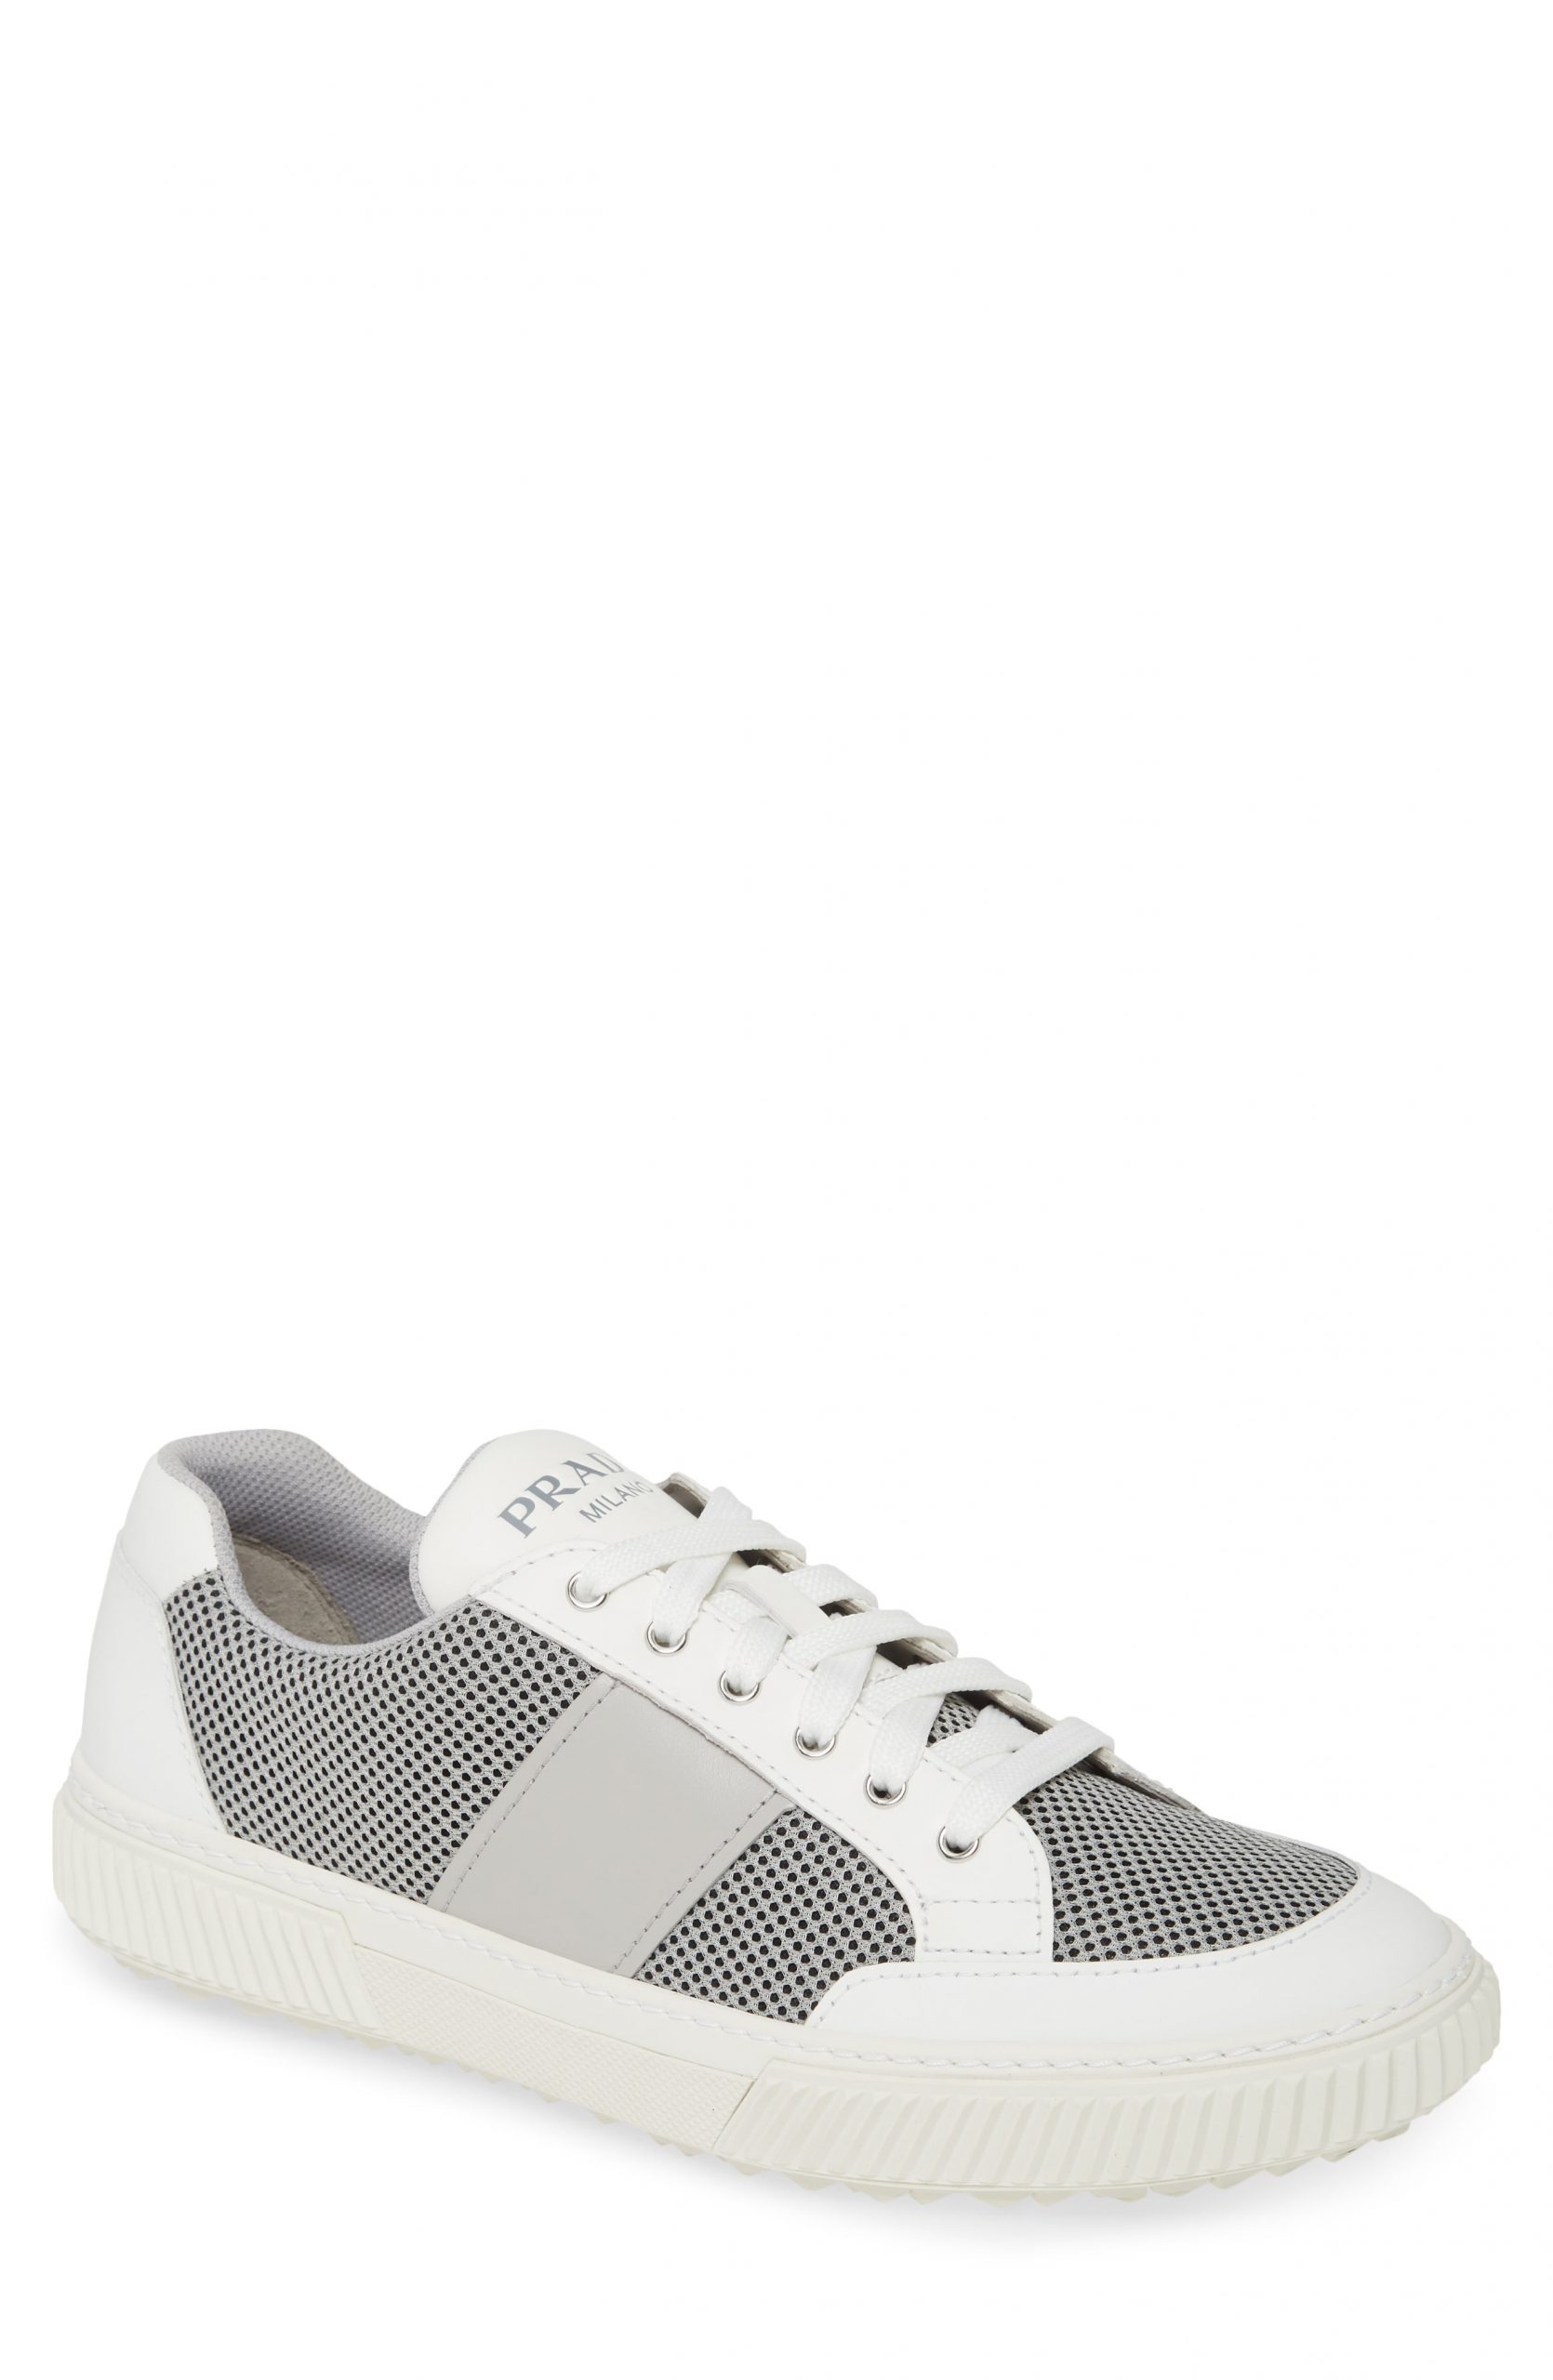 Men’s Prada Stratus Sneaker, Size 8.5US - White | The Fashionisto